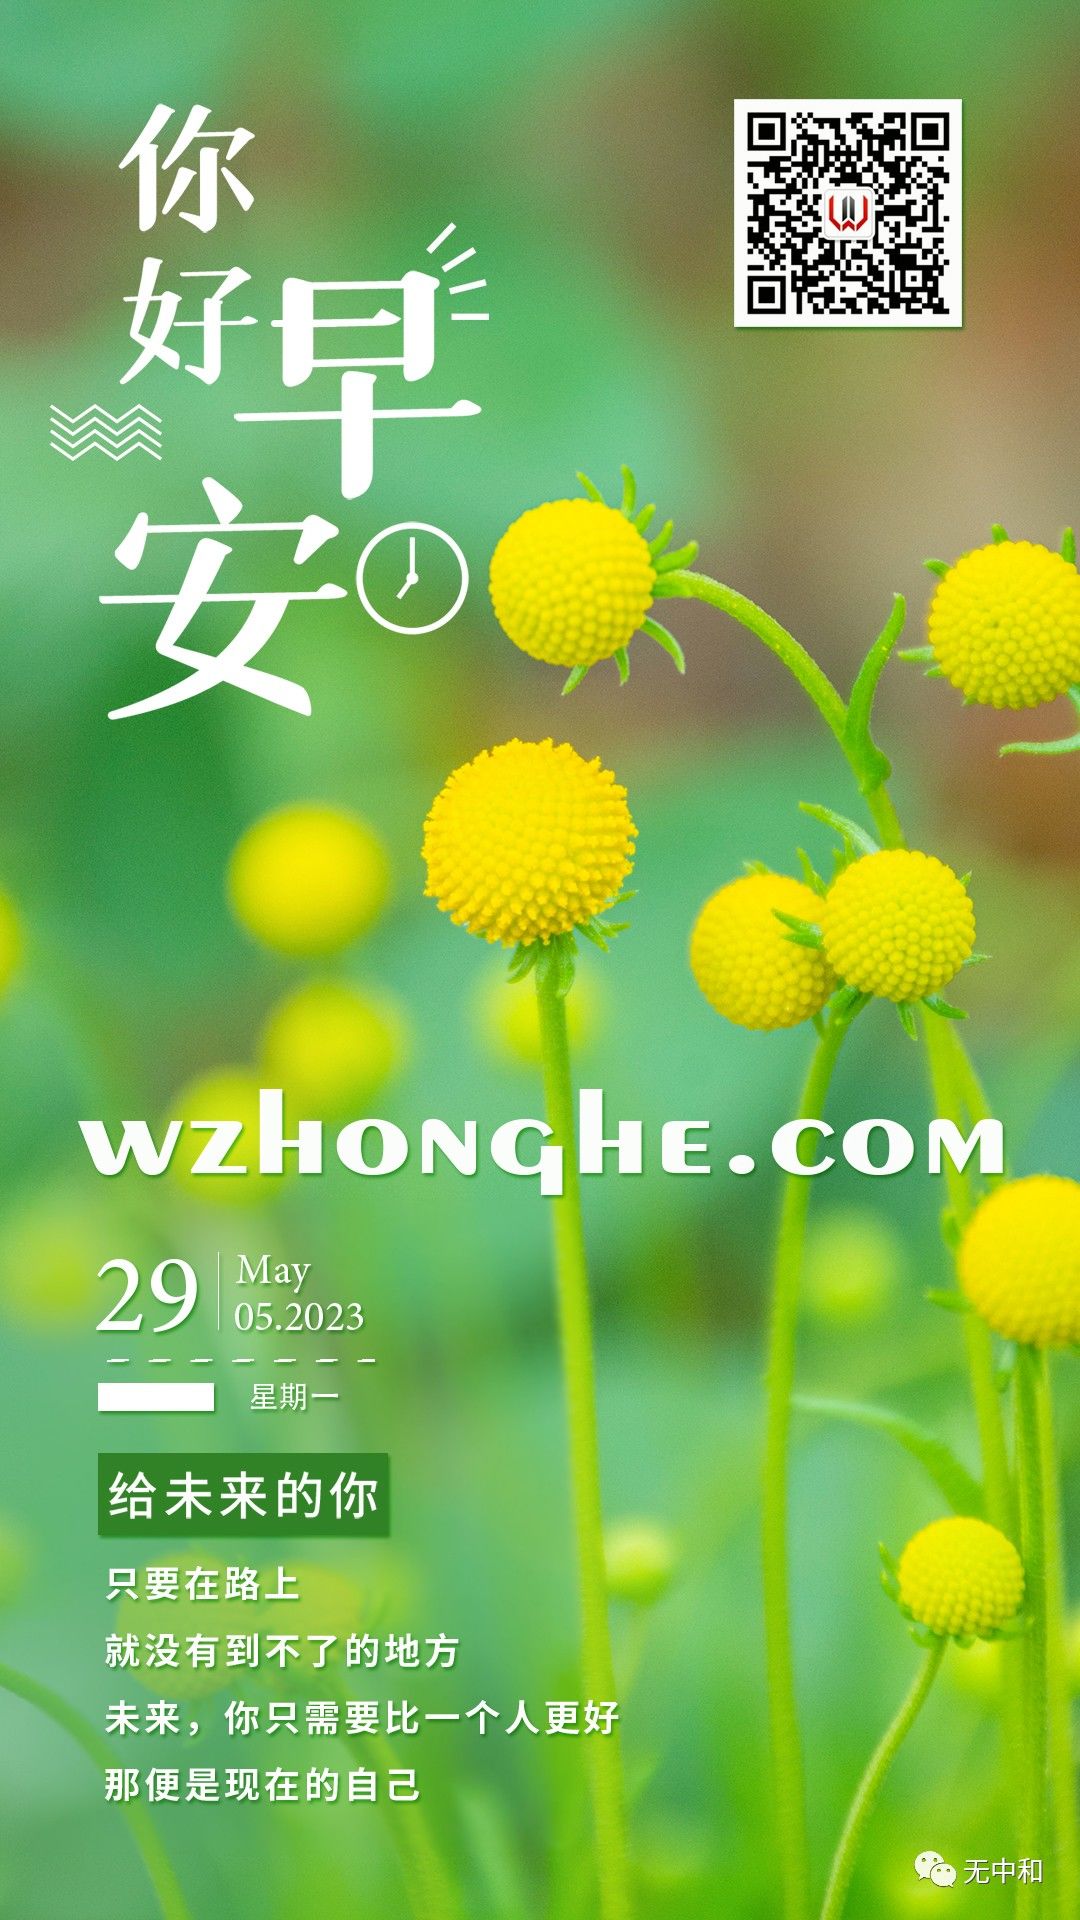 早安 - 无中和wzhonghe.com